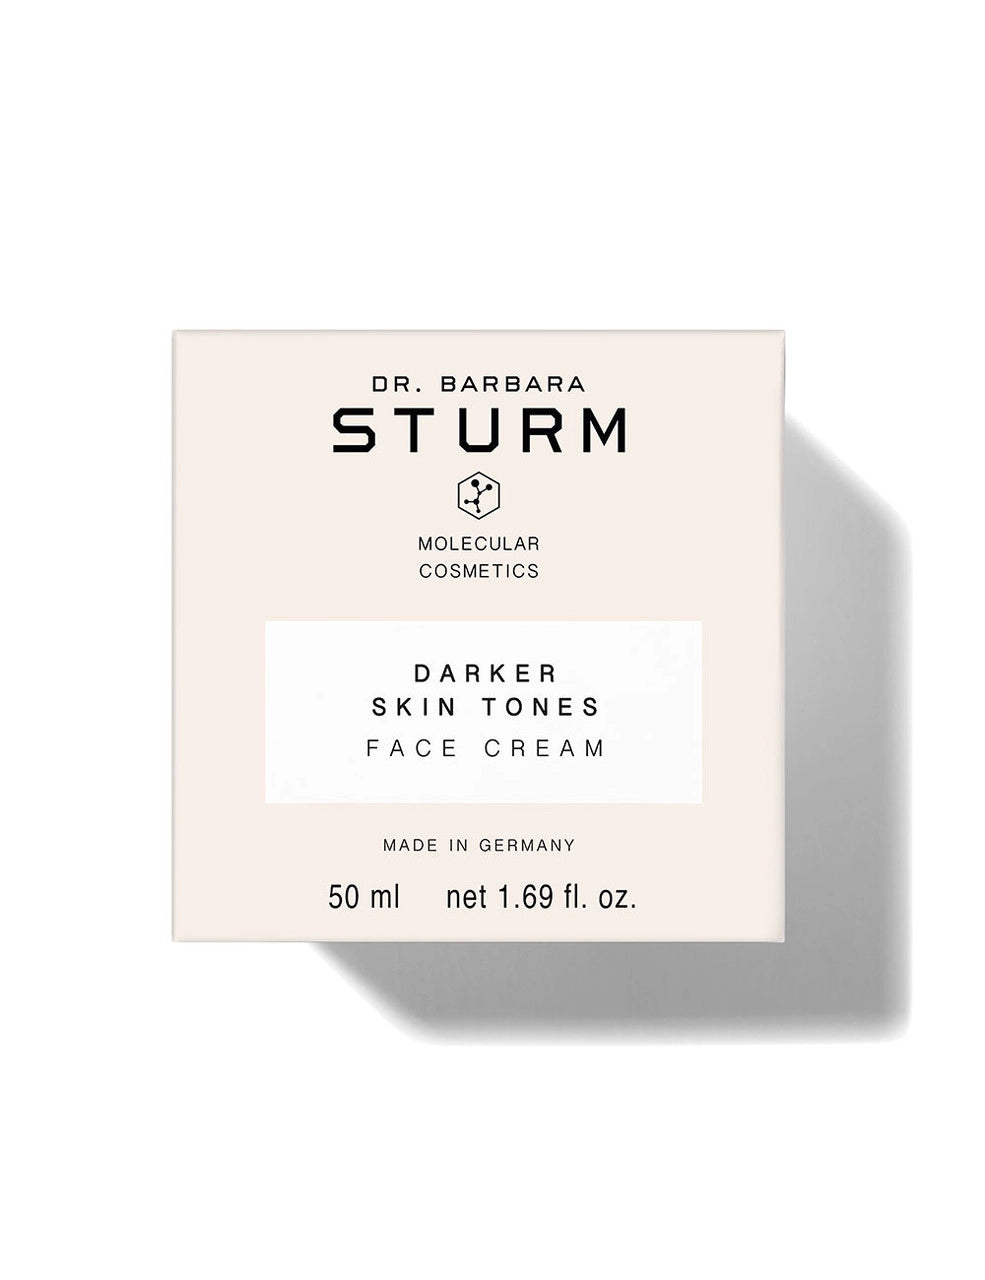 Darker Skin Tones Face Cream box